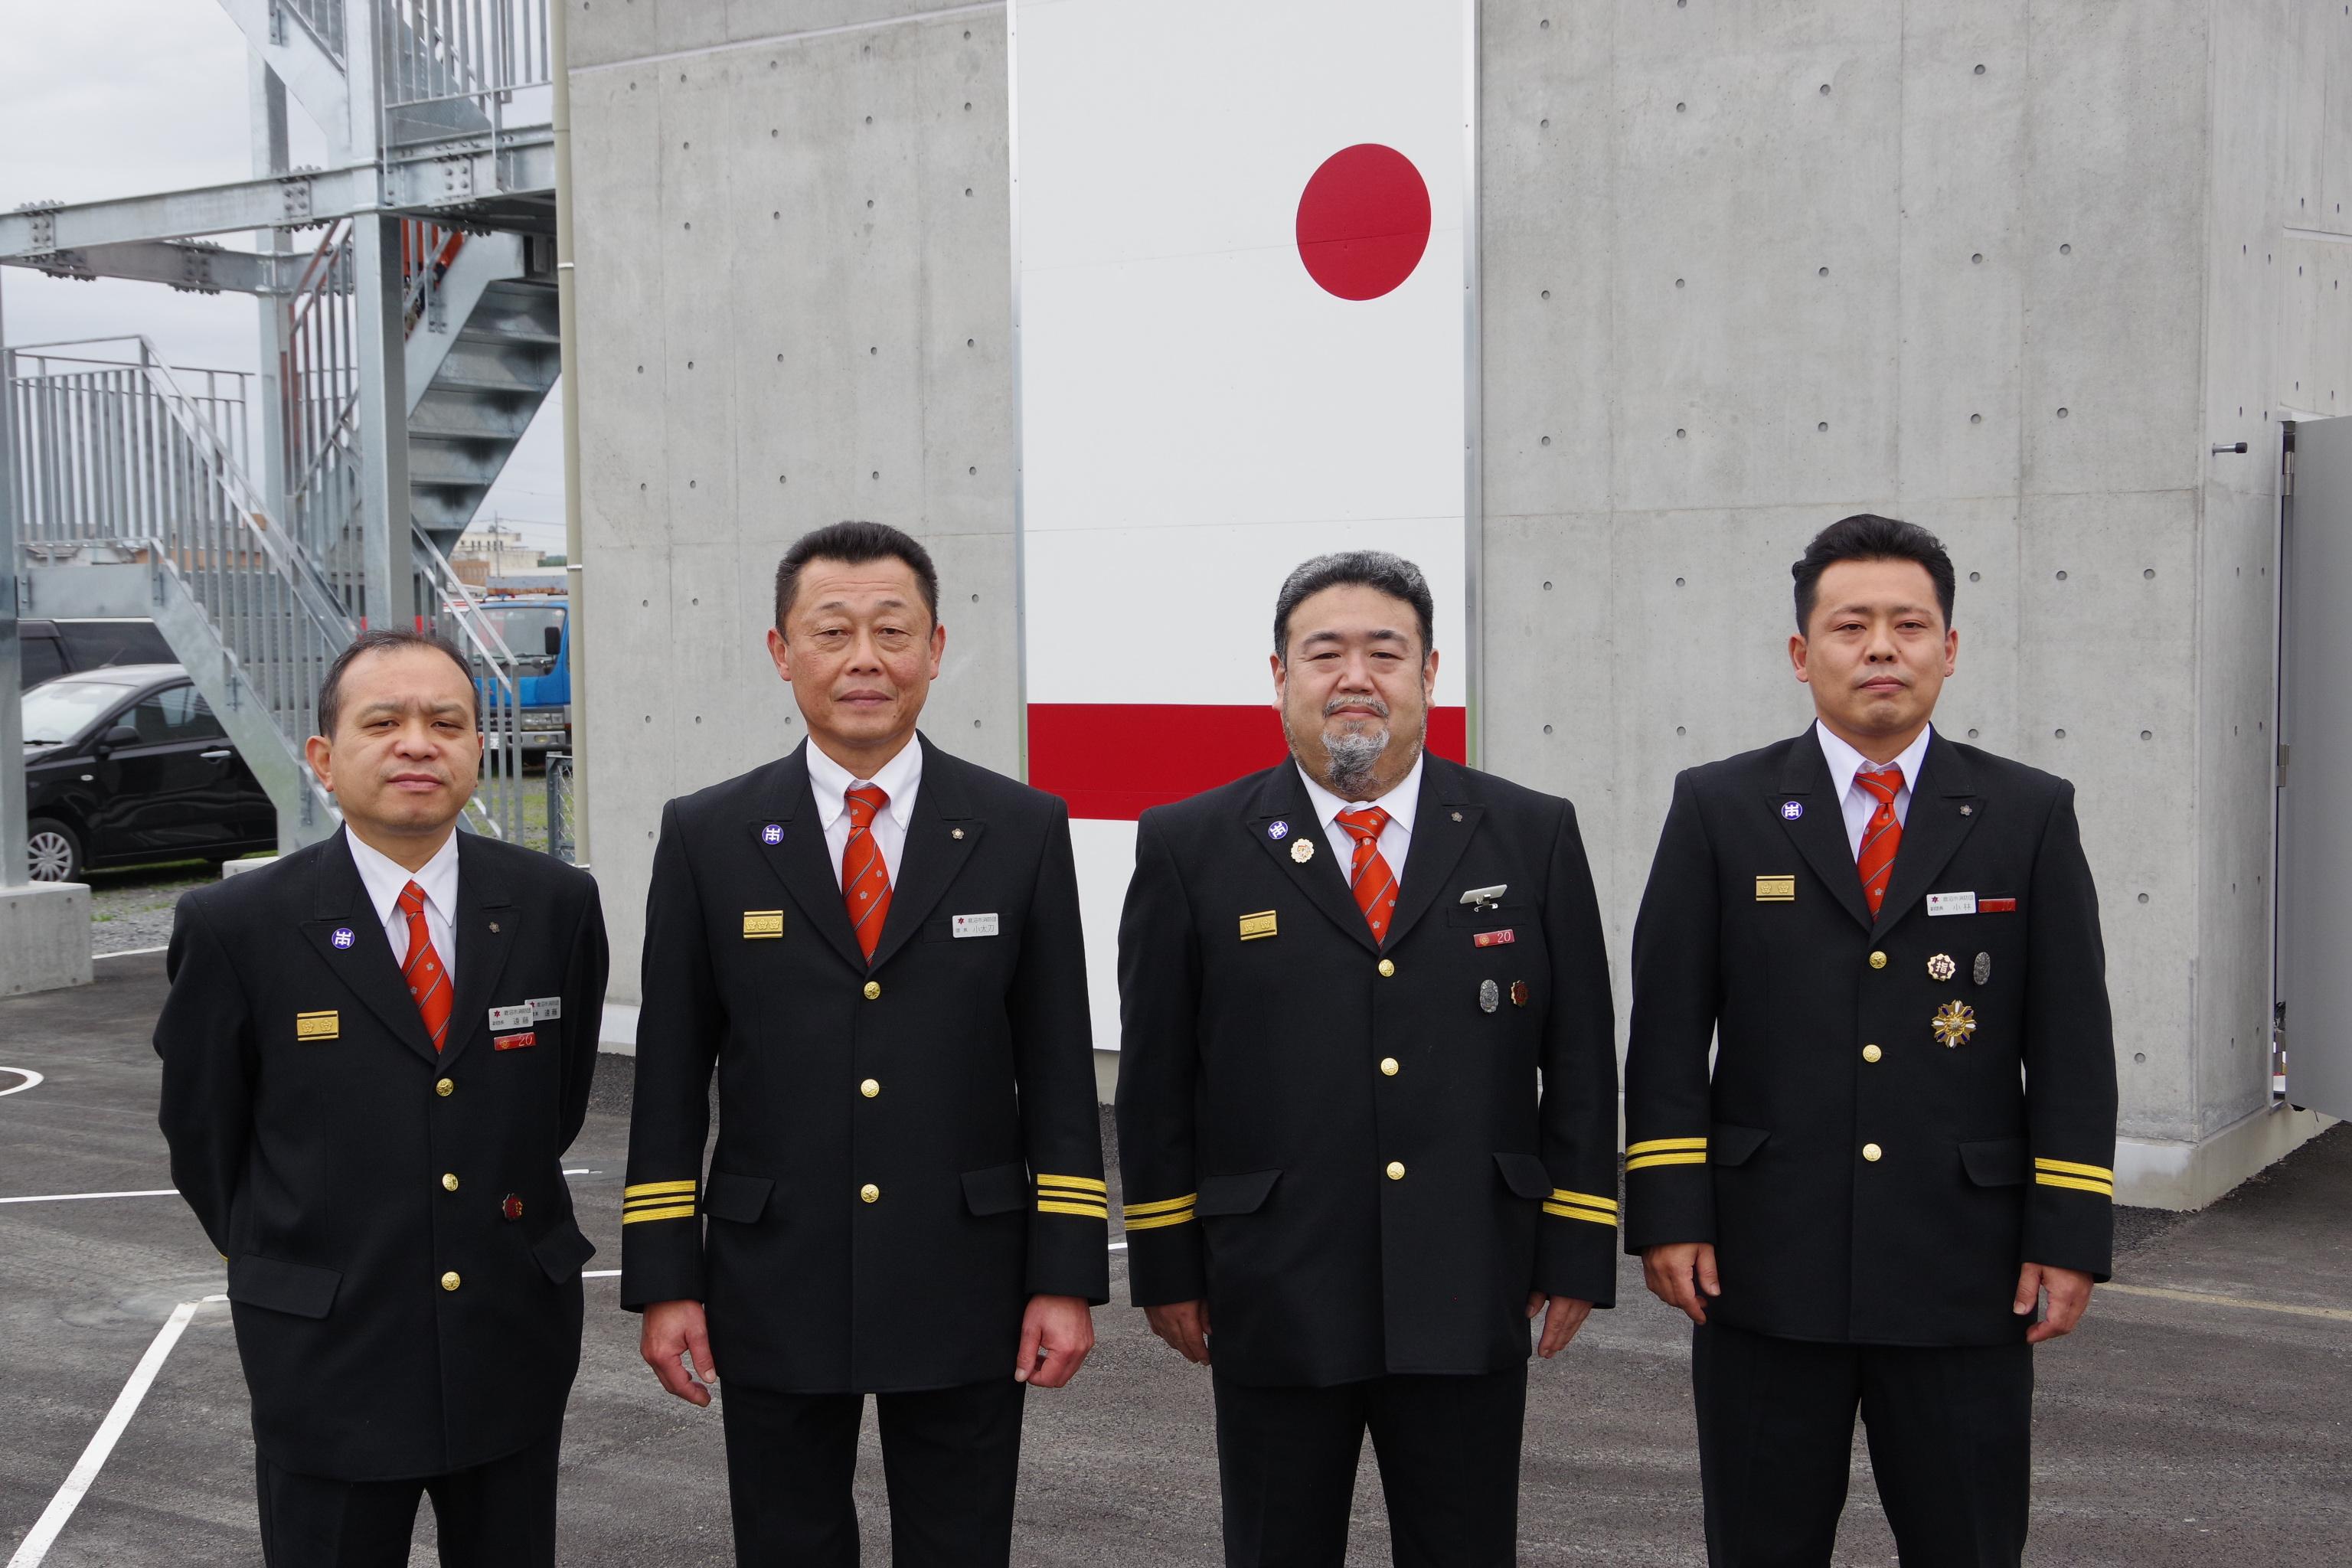 左から：遠藤副団長、小太刀団長、大貫副団長、小林副団長